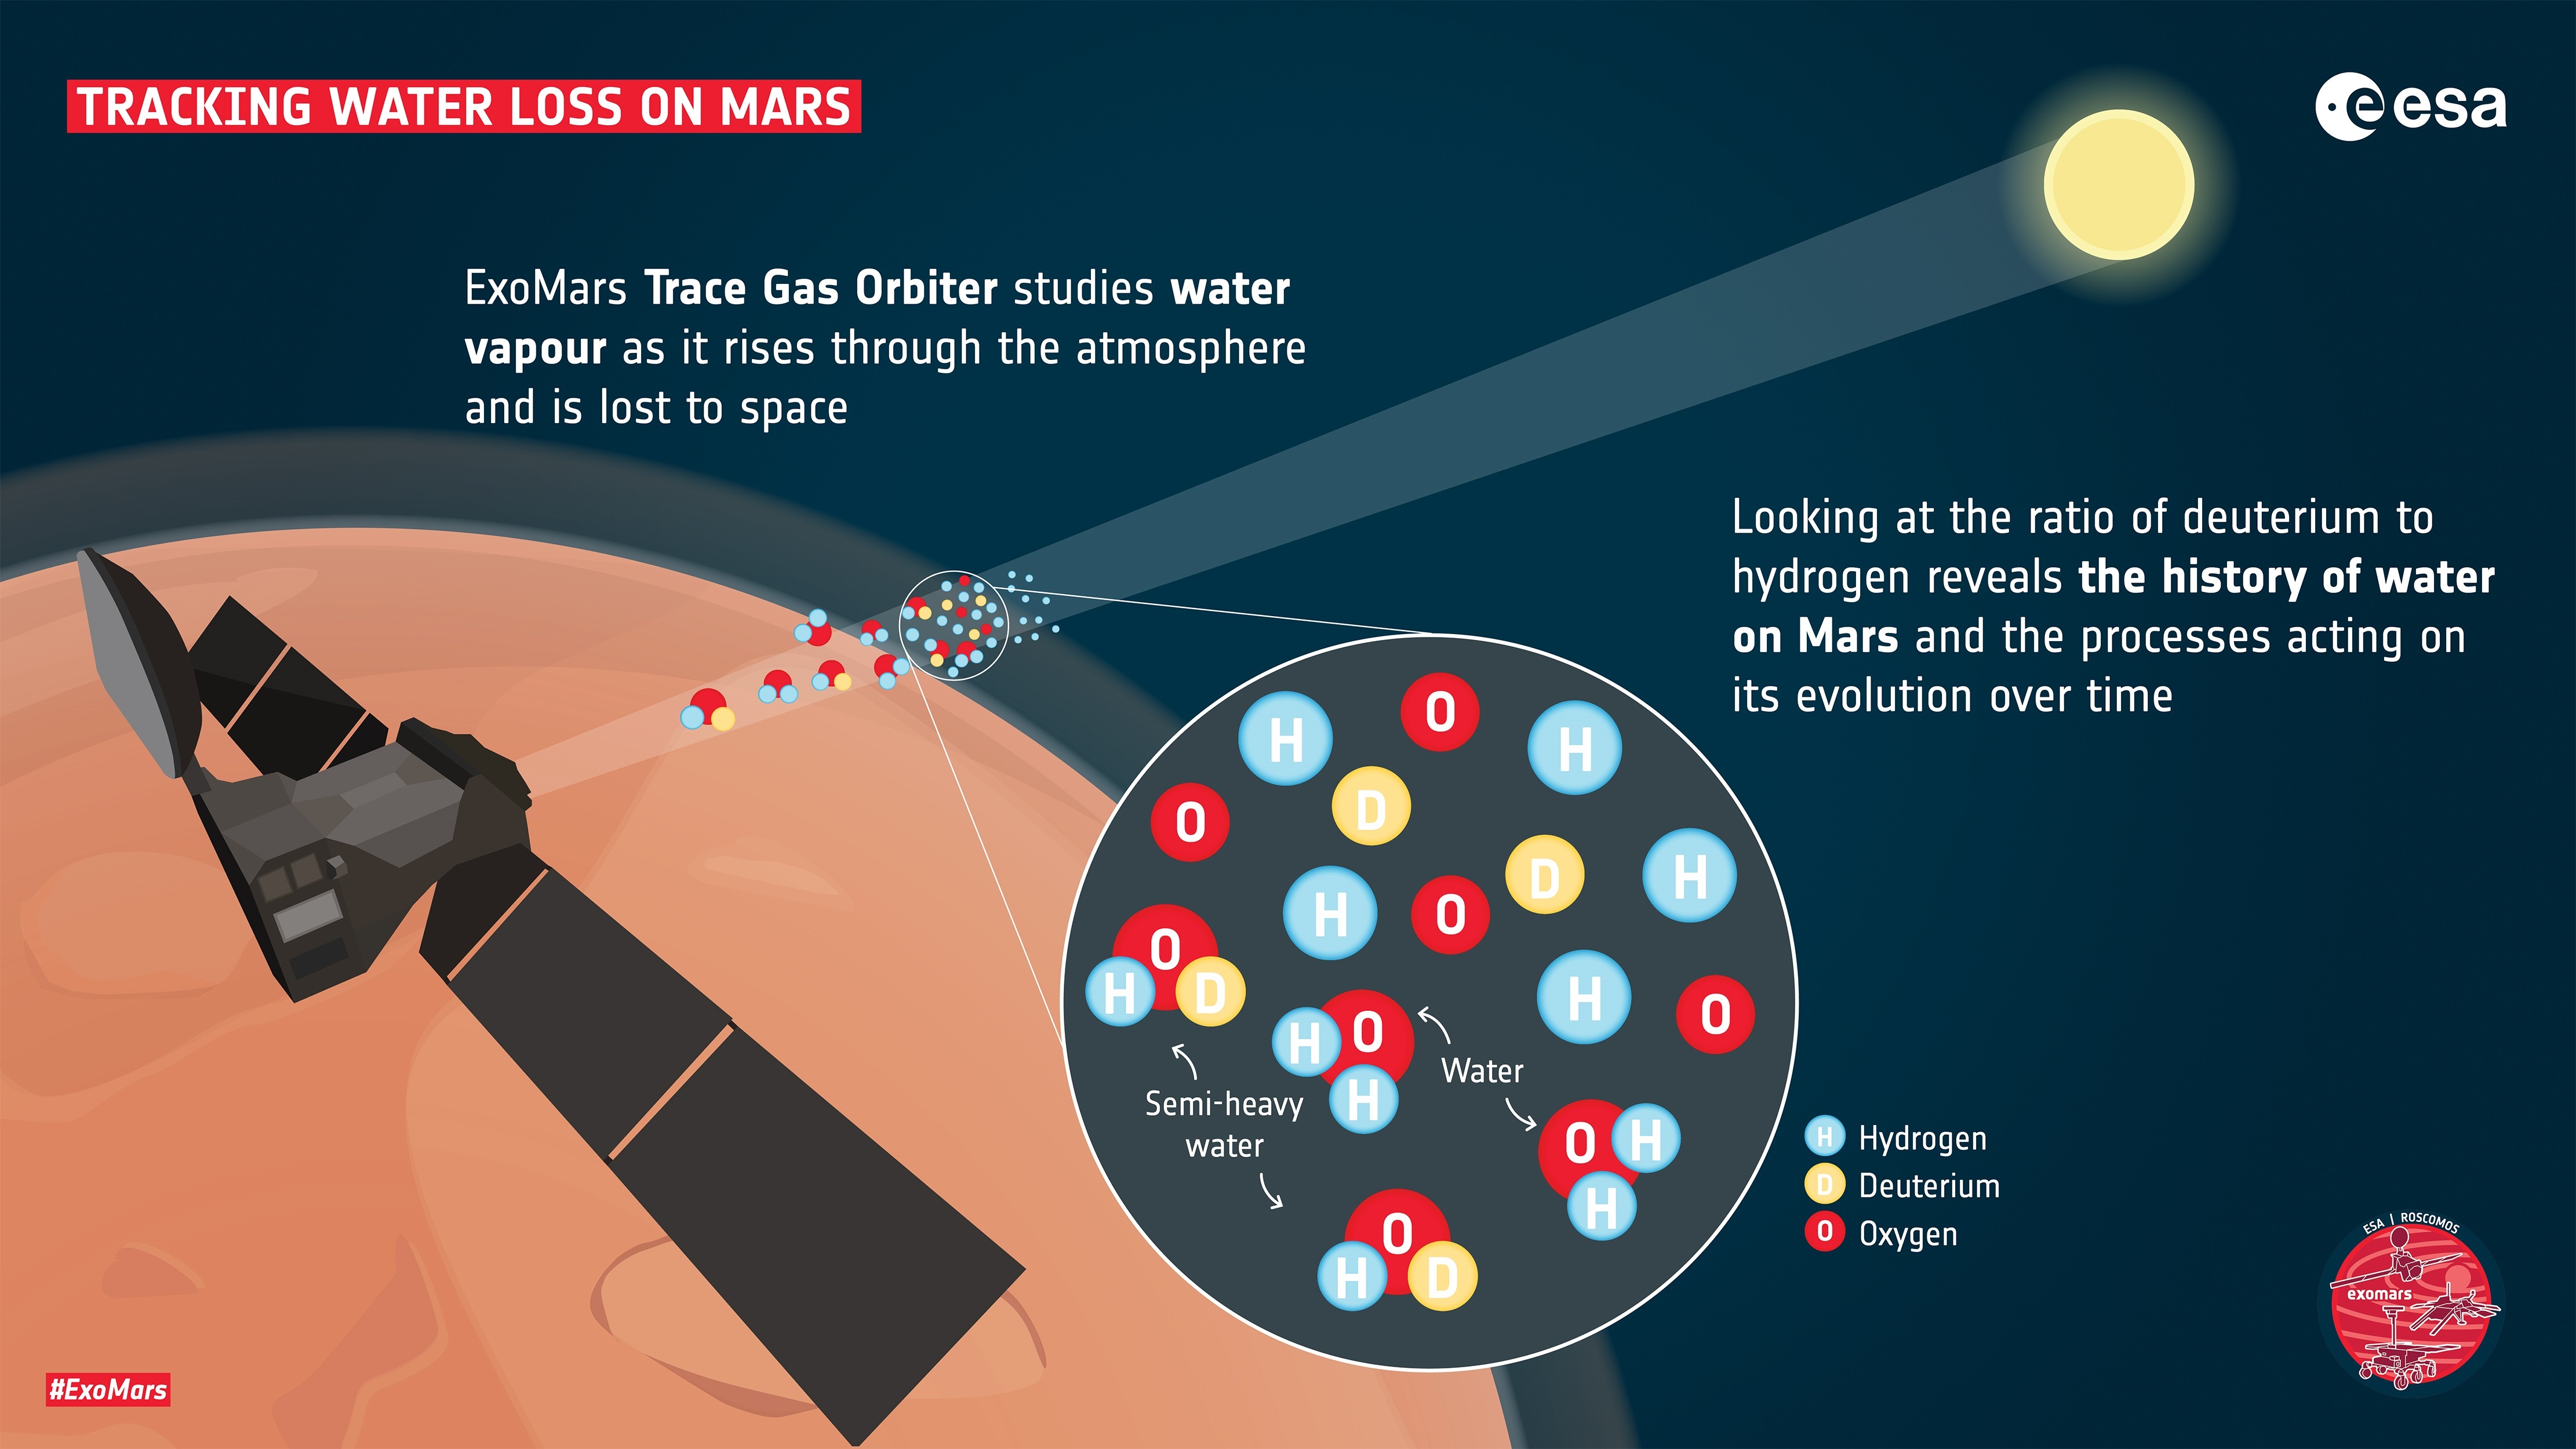 La misión ExoMars-TGO de la Agencia Espacial Europea (ESA) y la rusa Roscosmos estudia el vapor de agua y sus componentes a medida que asciende por la atmósfera de Marte y sale al espacio, lo que permite conocer la evolución de la pérdida de agua a lo largo del tiempo. EFE/ESA
